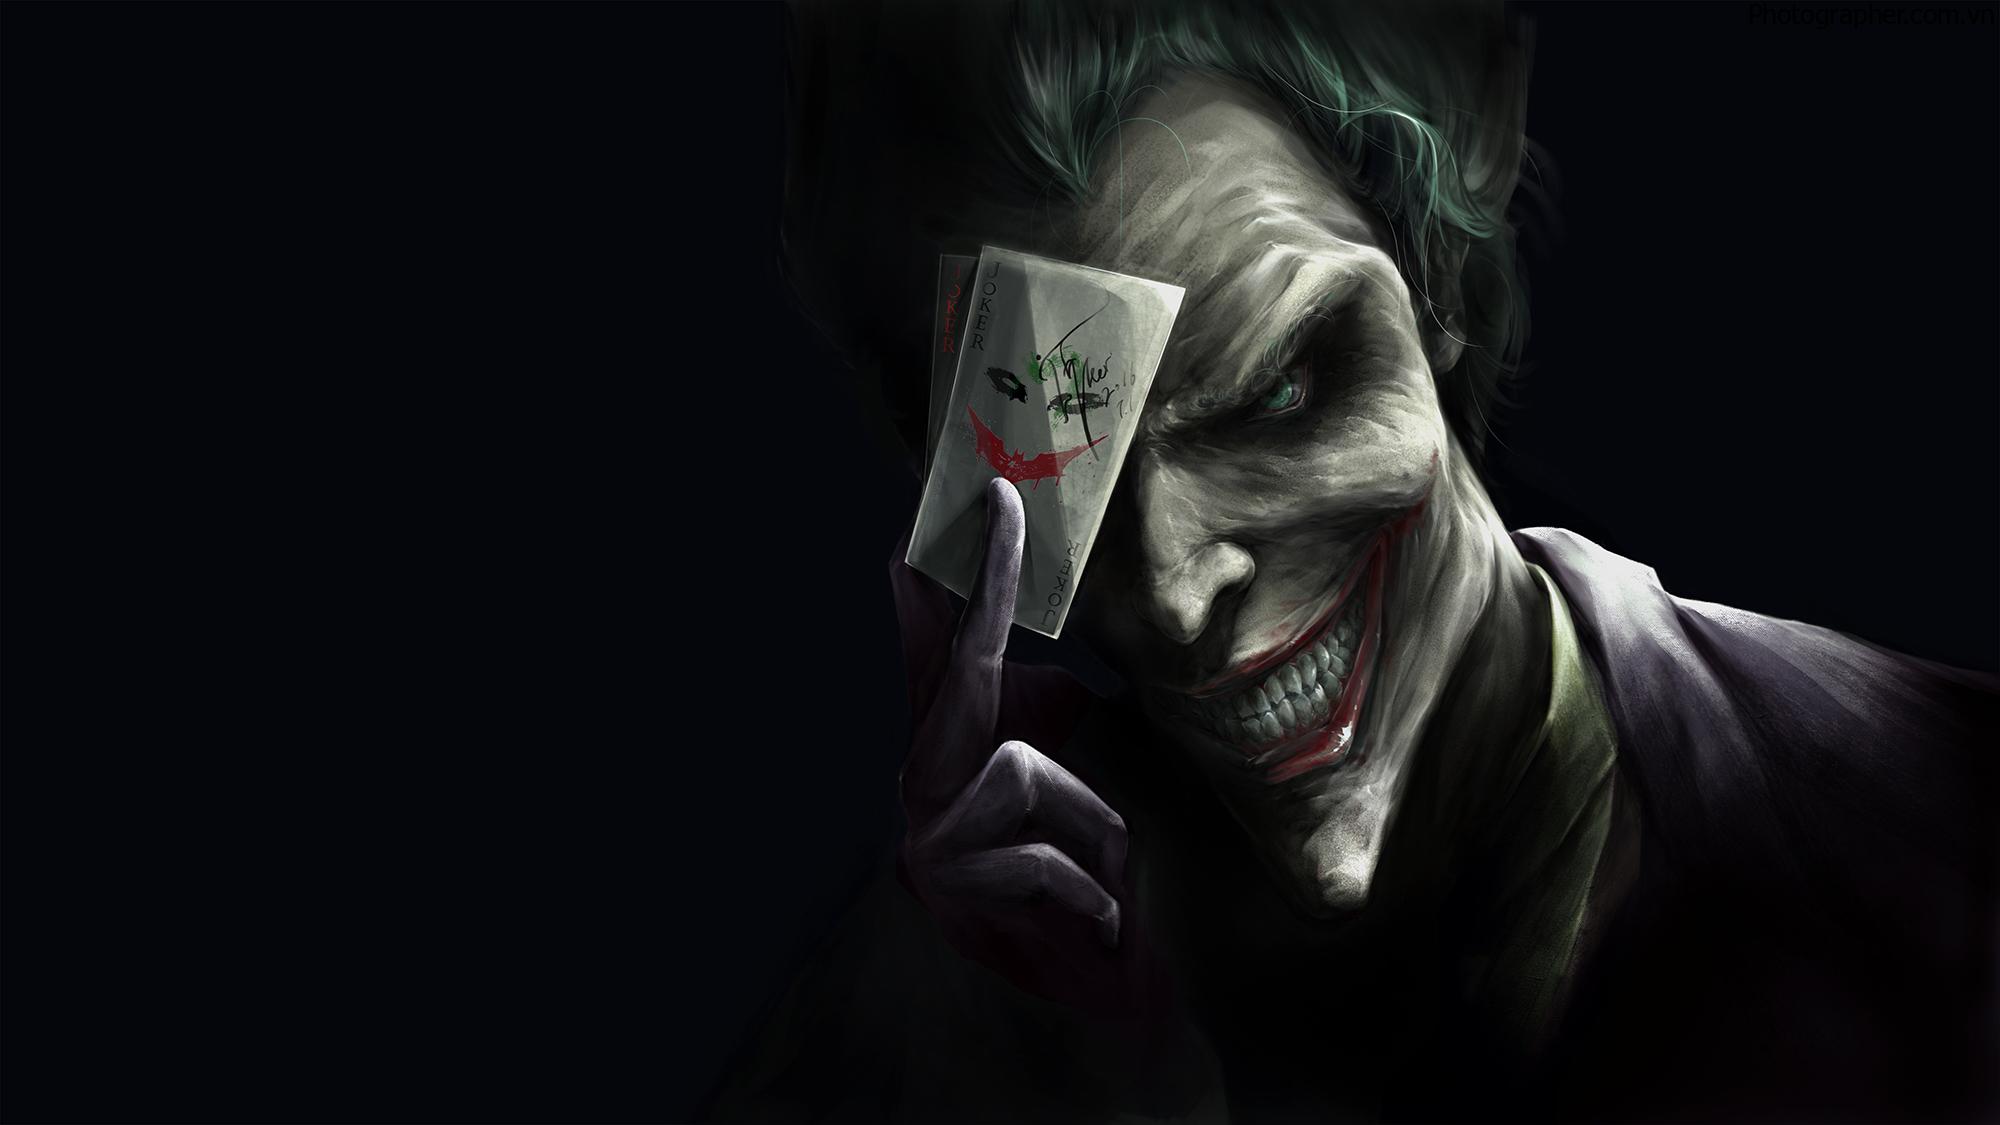 Hình ảnh tên hề cầm lá bài có hình mặt Joker.